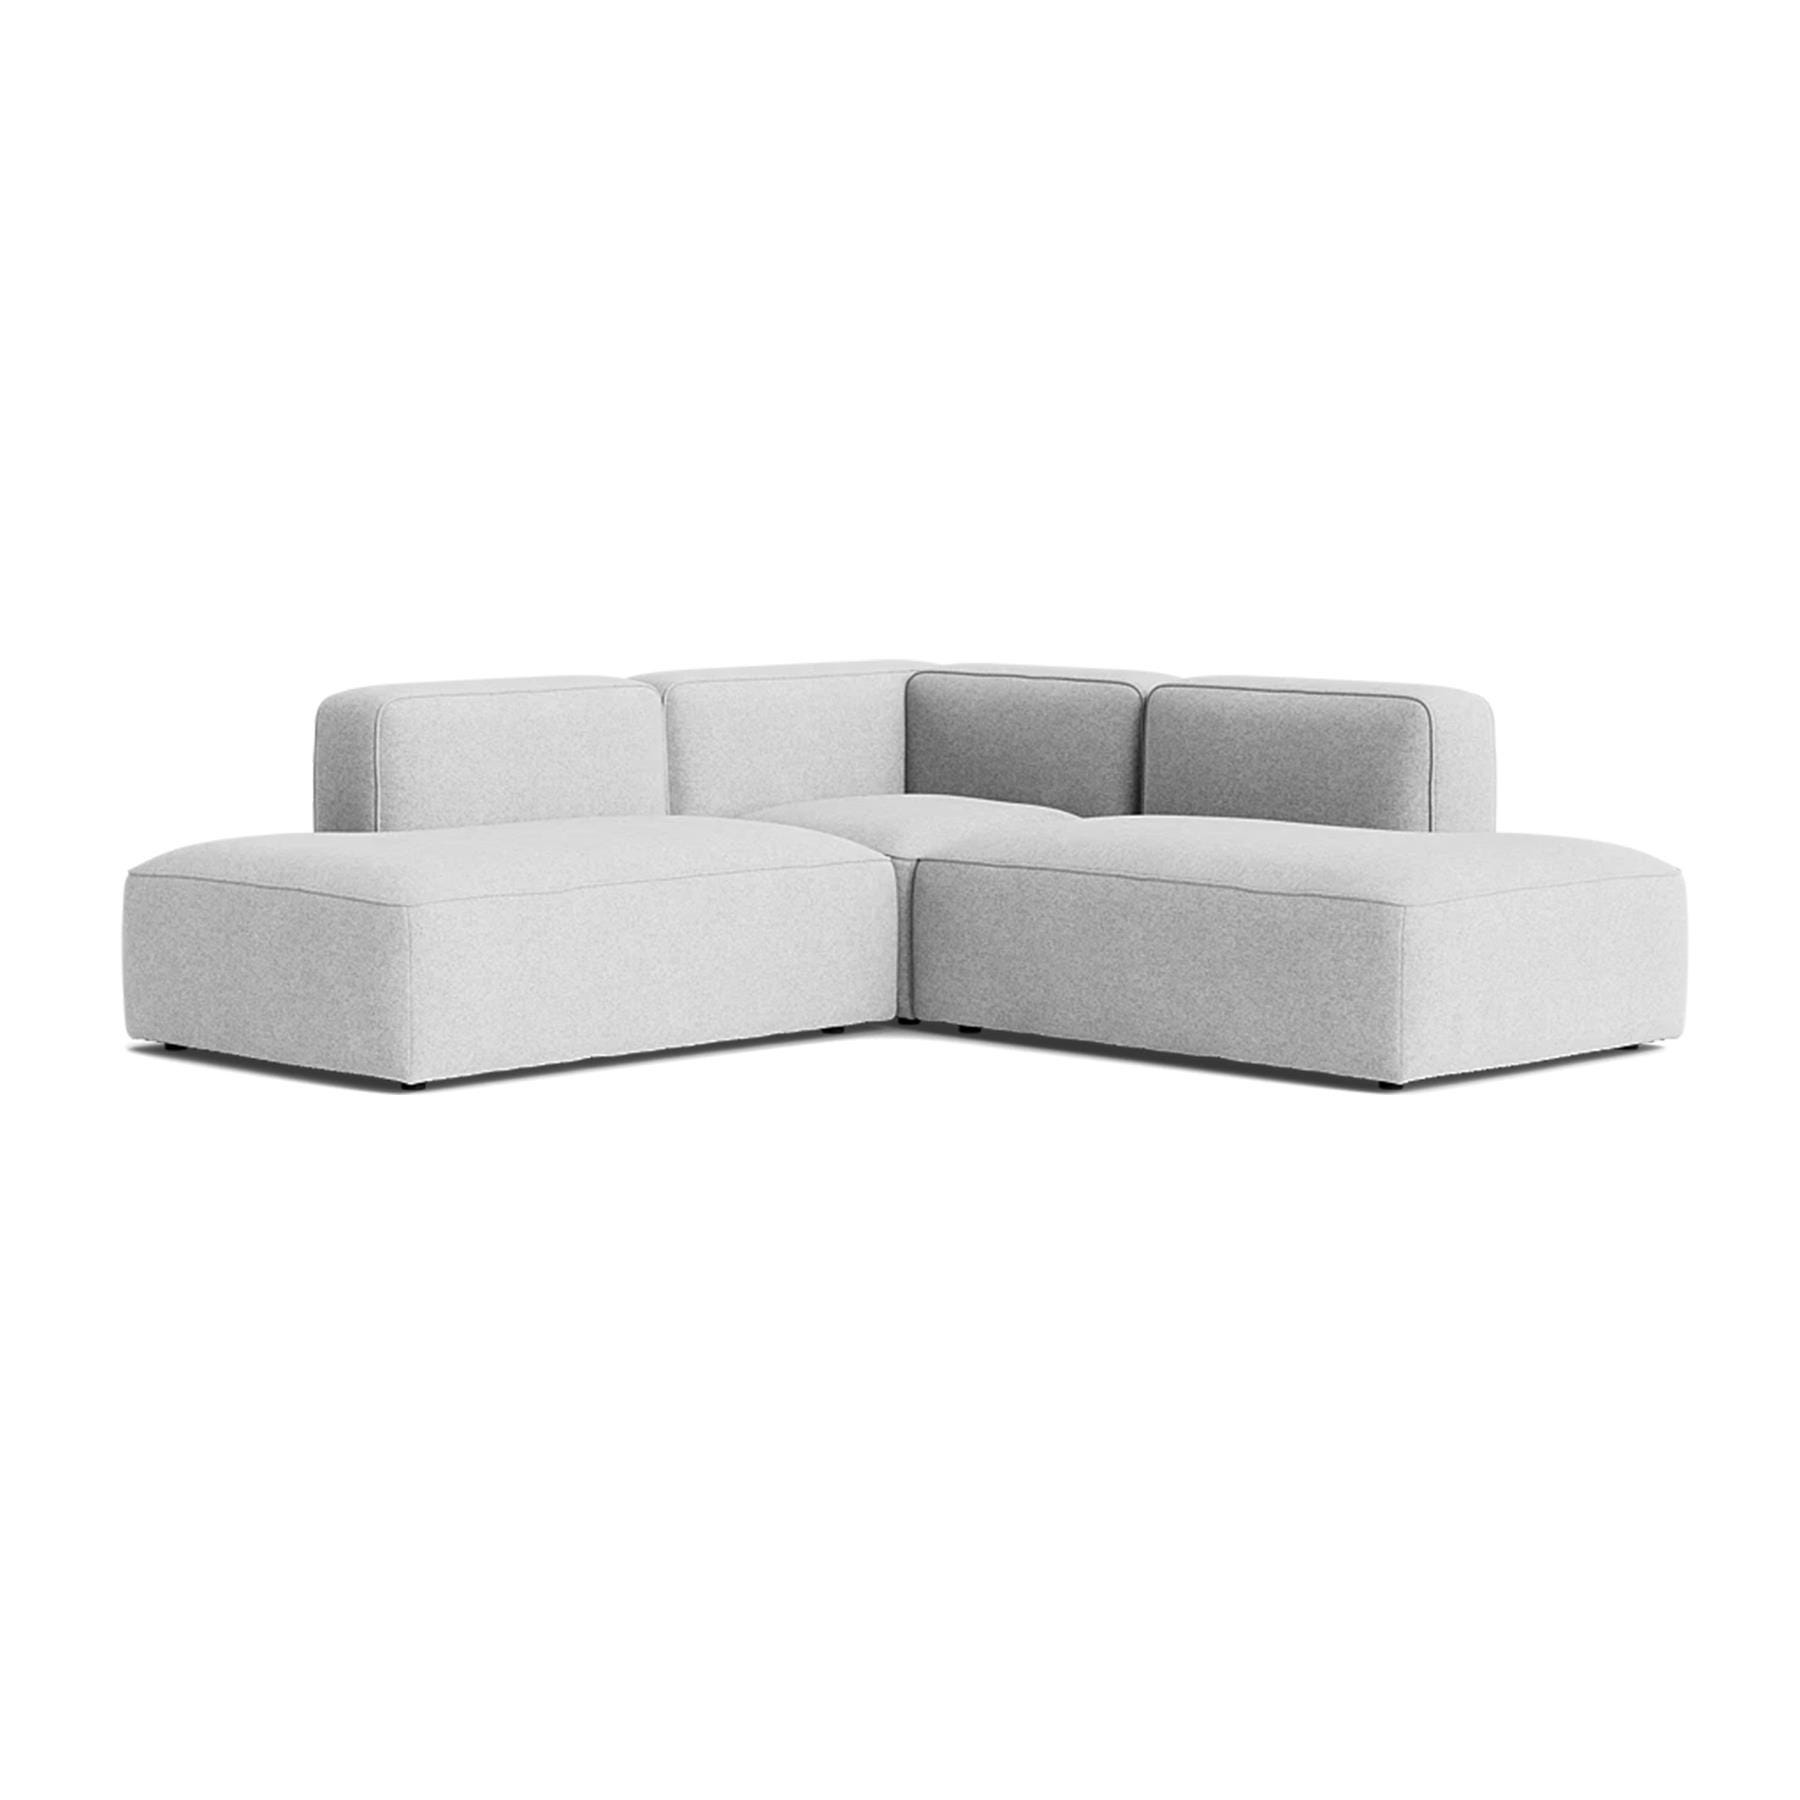 Make Nordic Basecamp Corner Sofa With Open Ends Hallingdal 116 Grey Designer Furniture From Holloways Of Ludlow